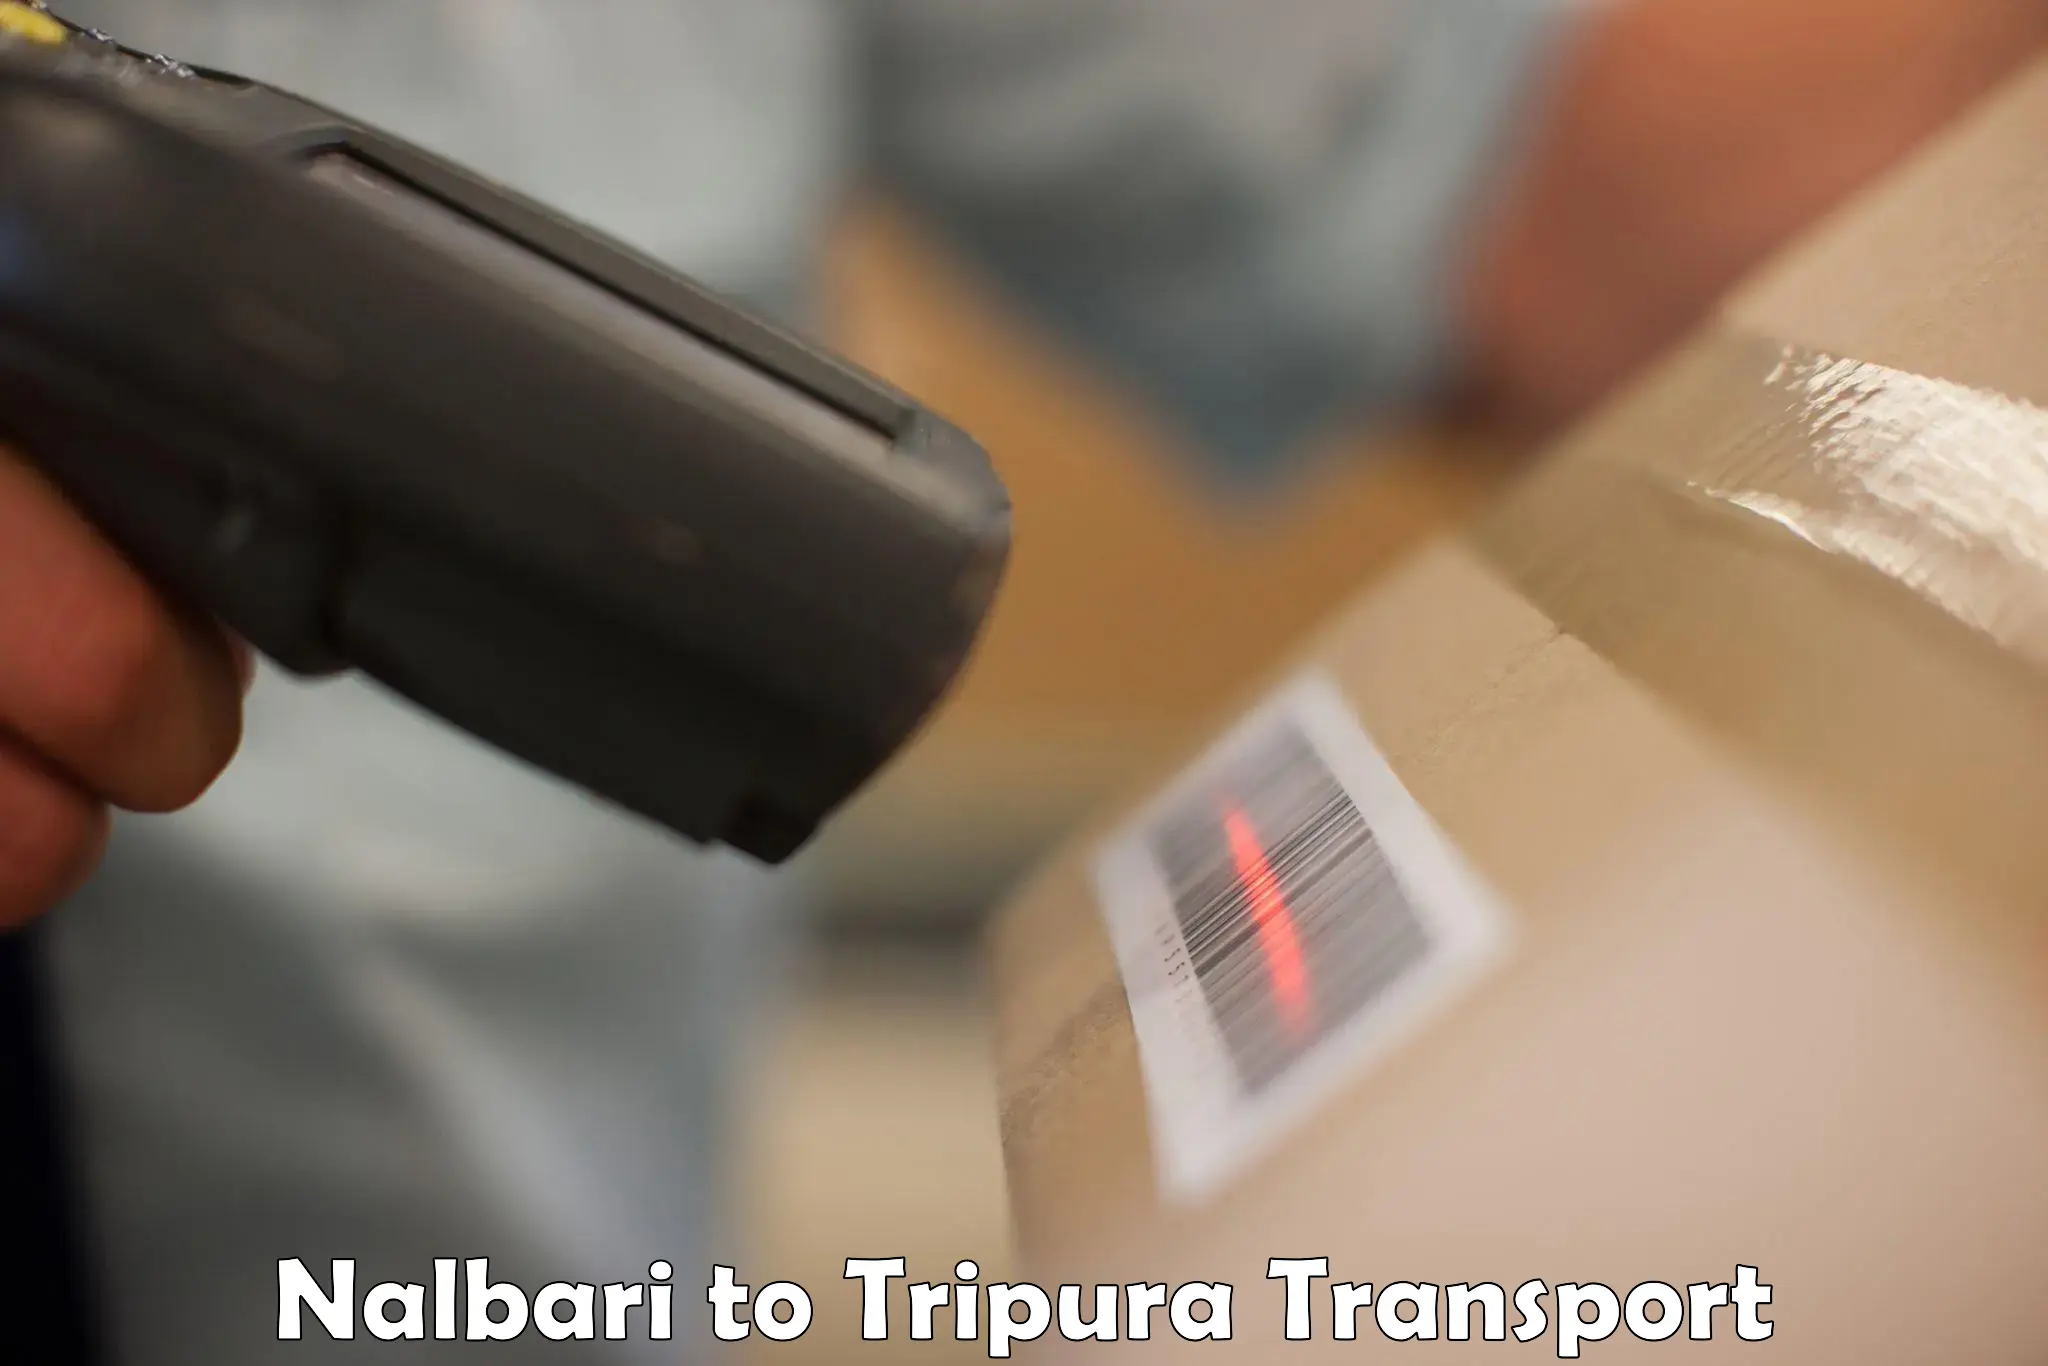 Truck transport companies in India Nalbari to Bishalgarh